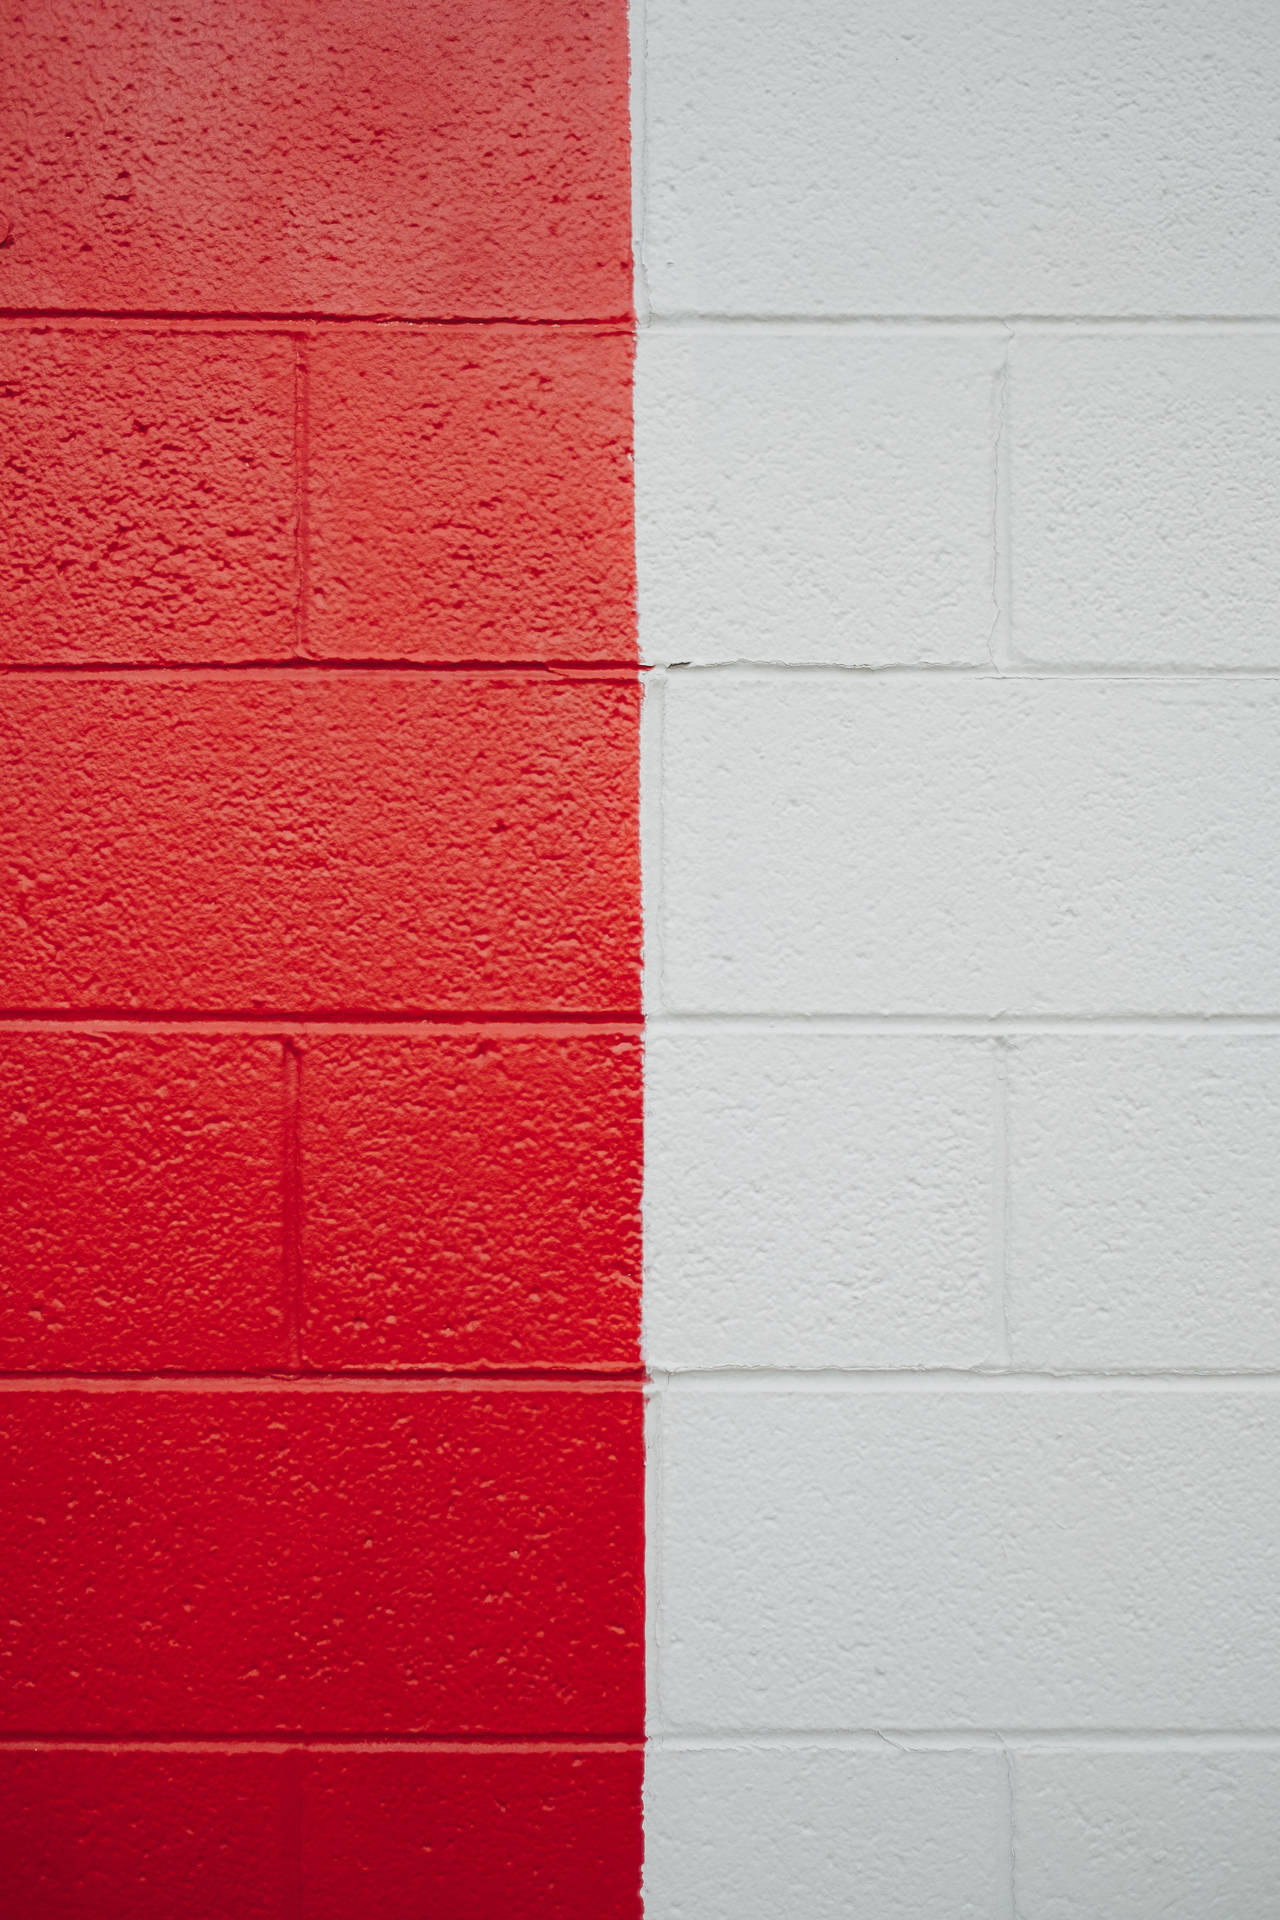 Rød og hvid mursten Wallpaper